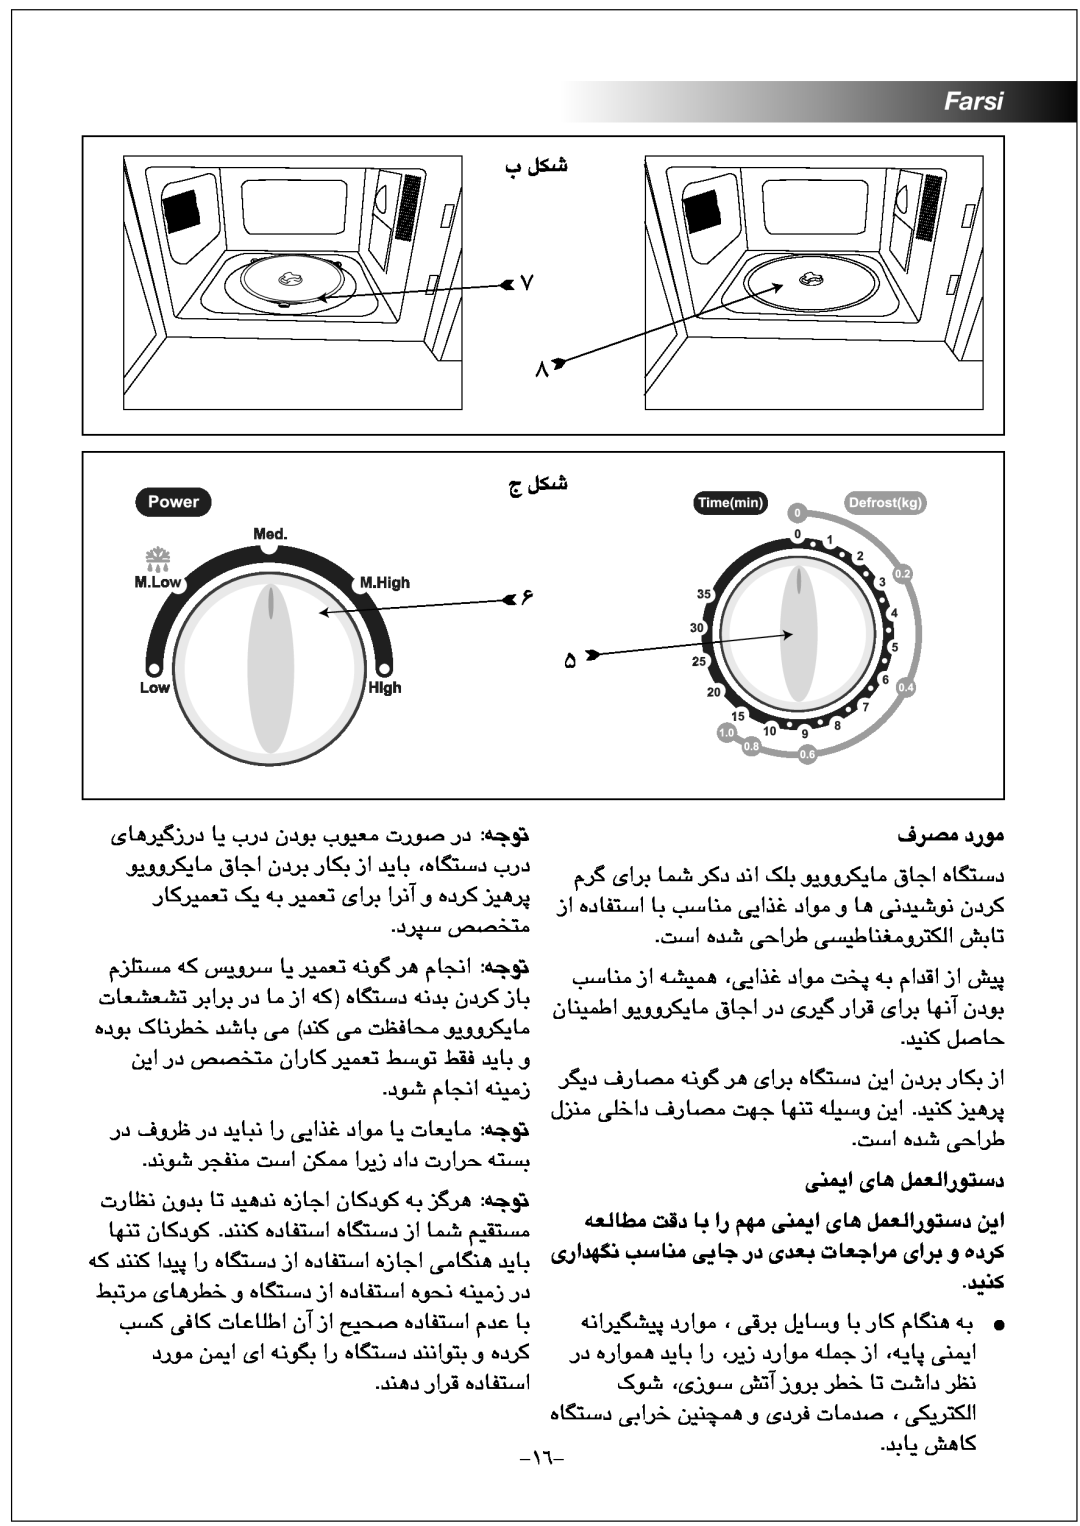 Black & Decker MZ2000P manual ﺏ ﻞﮑﺷ, ﺝ ﻞﮑﺷ, ﻑﺮﺼﻣ ﺩﺭﻮﻣ, ﻪﻌﻟﺎﻄﻣ ﺖﻗﺩ ﺎﺑ ﺍﺭ ﻢﻬﻣ ﯽﻨﻤﯾﺍ ﯼﺎﻫ ﻞﻤﻌﻟﺍﺭﻮﺘﺳﺩ ﻦﯾﺍ, ﺪﯿﻨﮐ, Farsi 